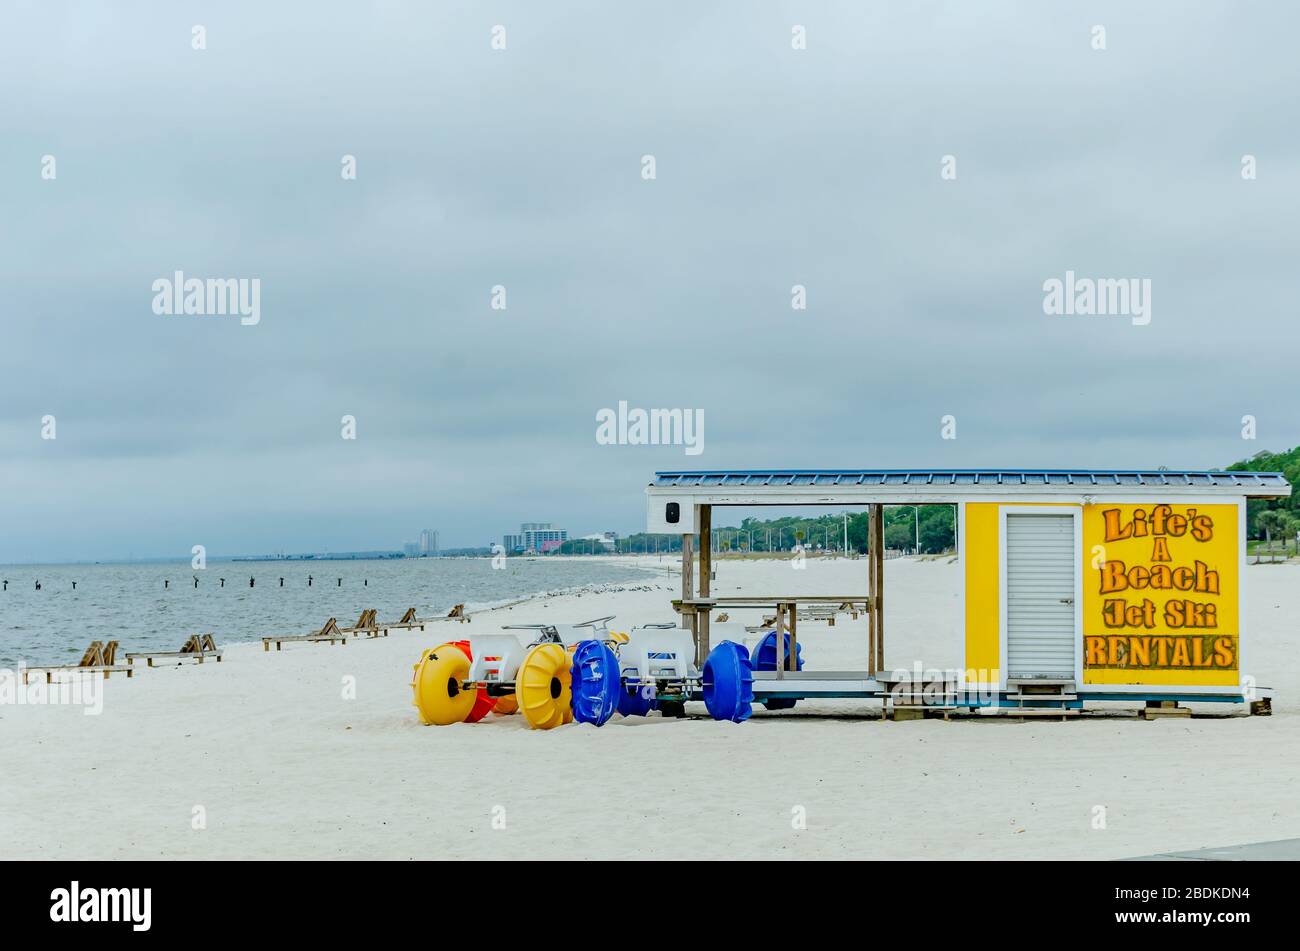 Les tricycles de plage sont inutilisés devant une boutique de location de jet ski car la plage de Biloxi est fermée pendant la pandémie de COVID-19 à Biloxi, dans le Mississippi. Banque D'Images